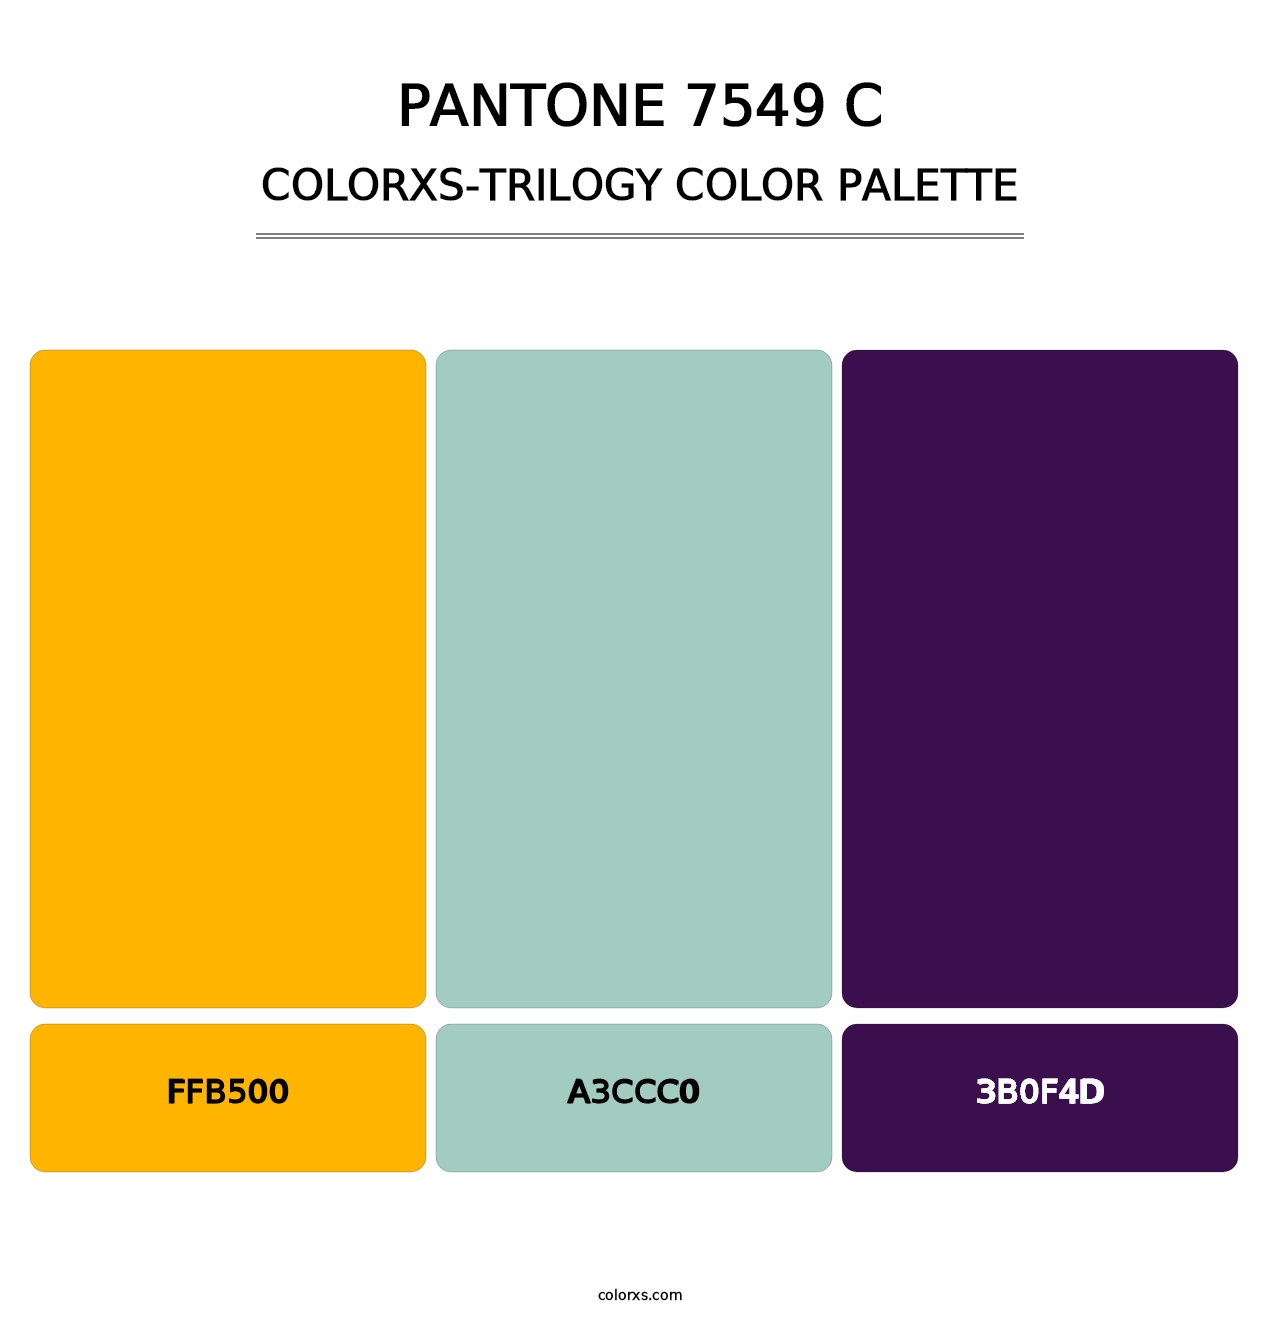 PANTONE 7549 C - Colorxs Trilogy Palette